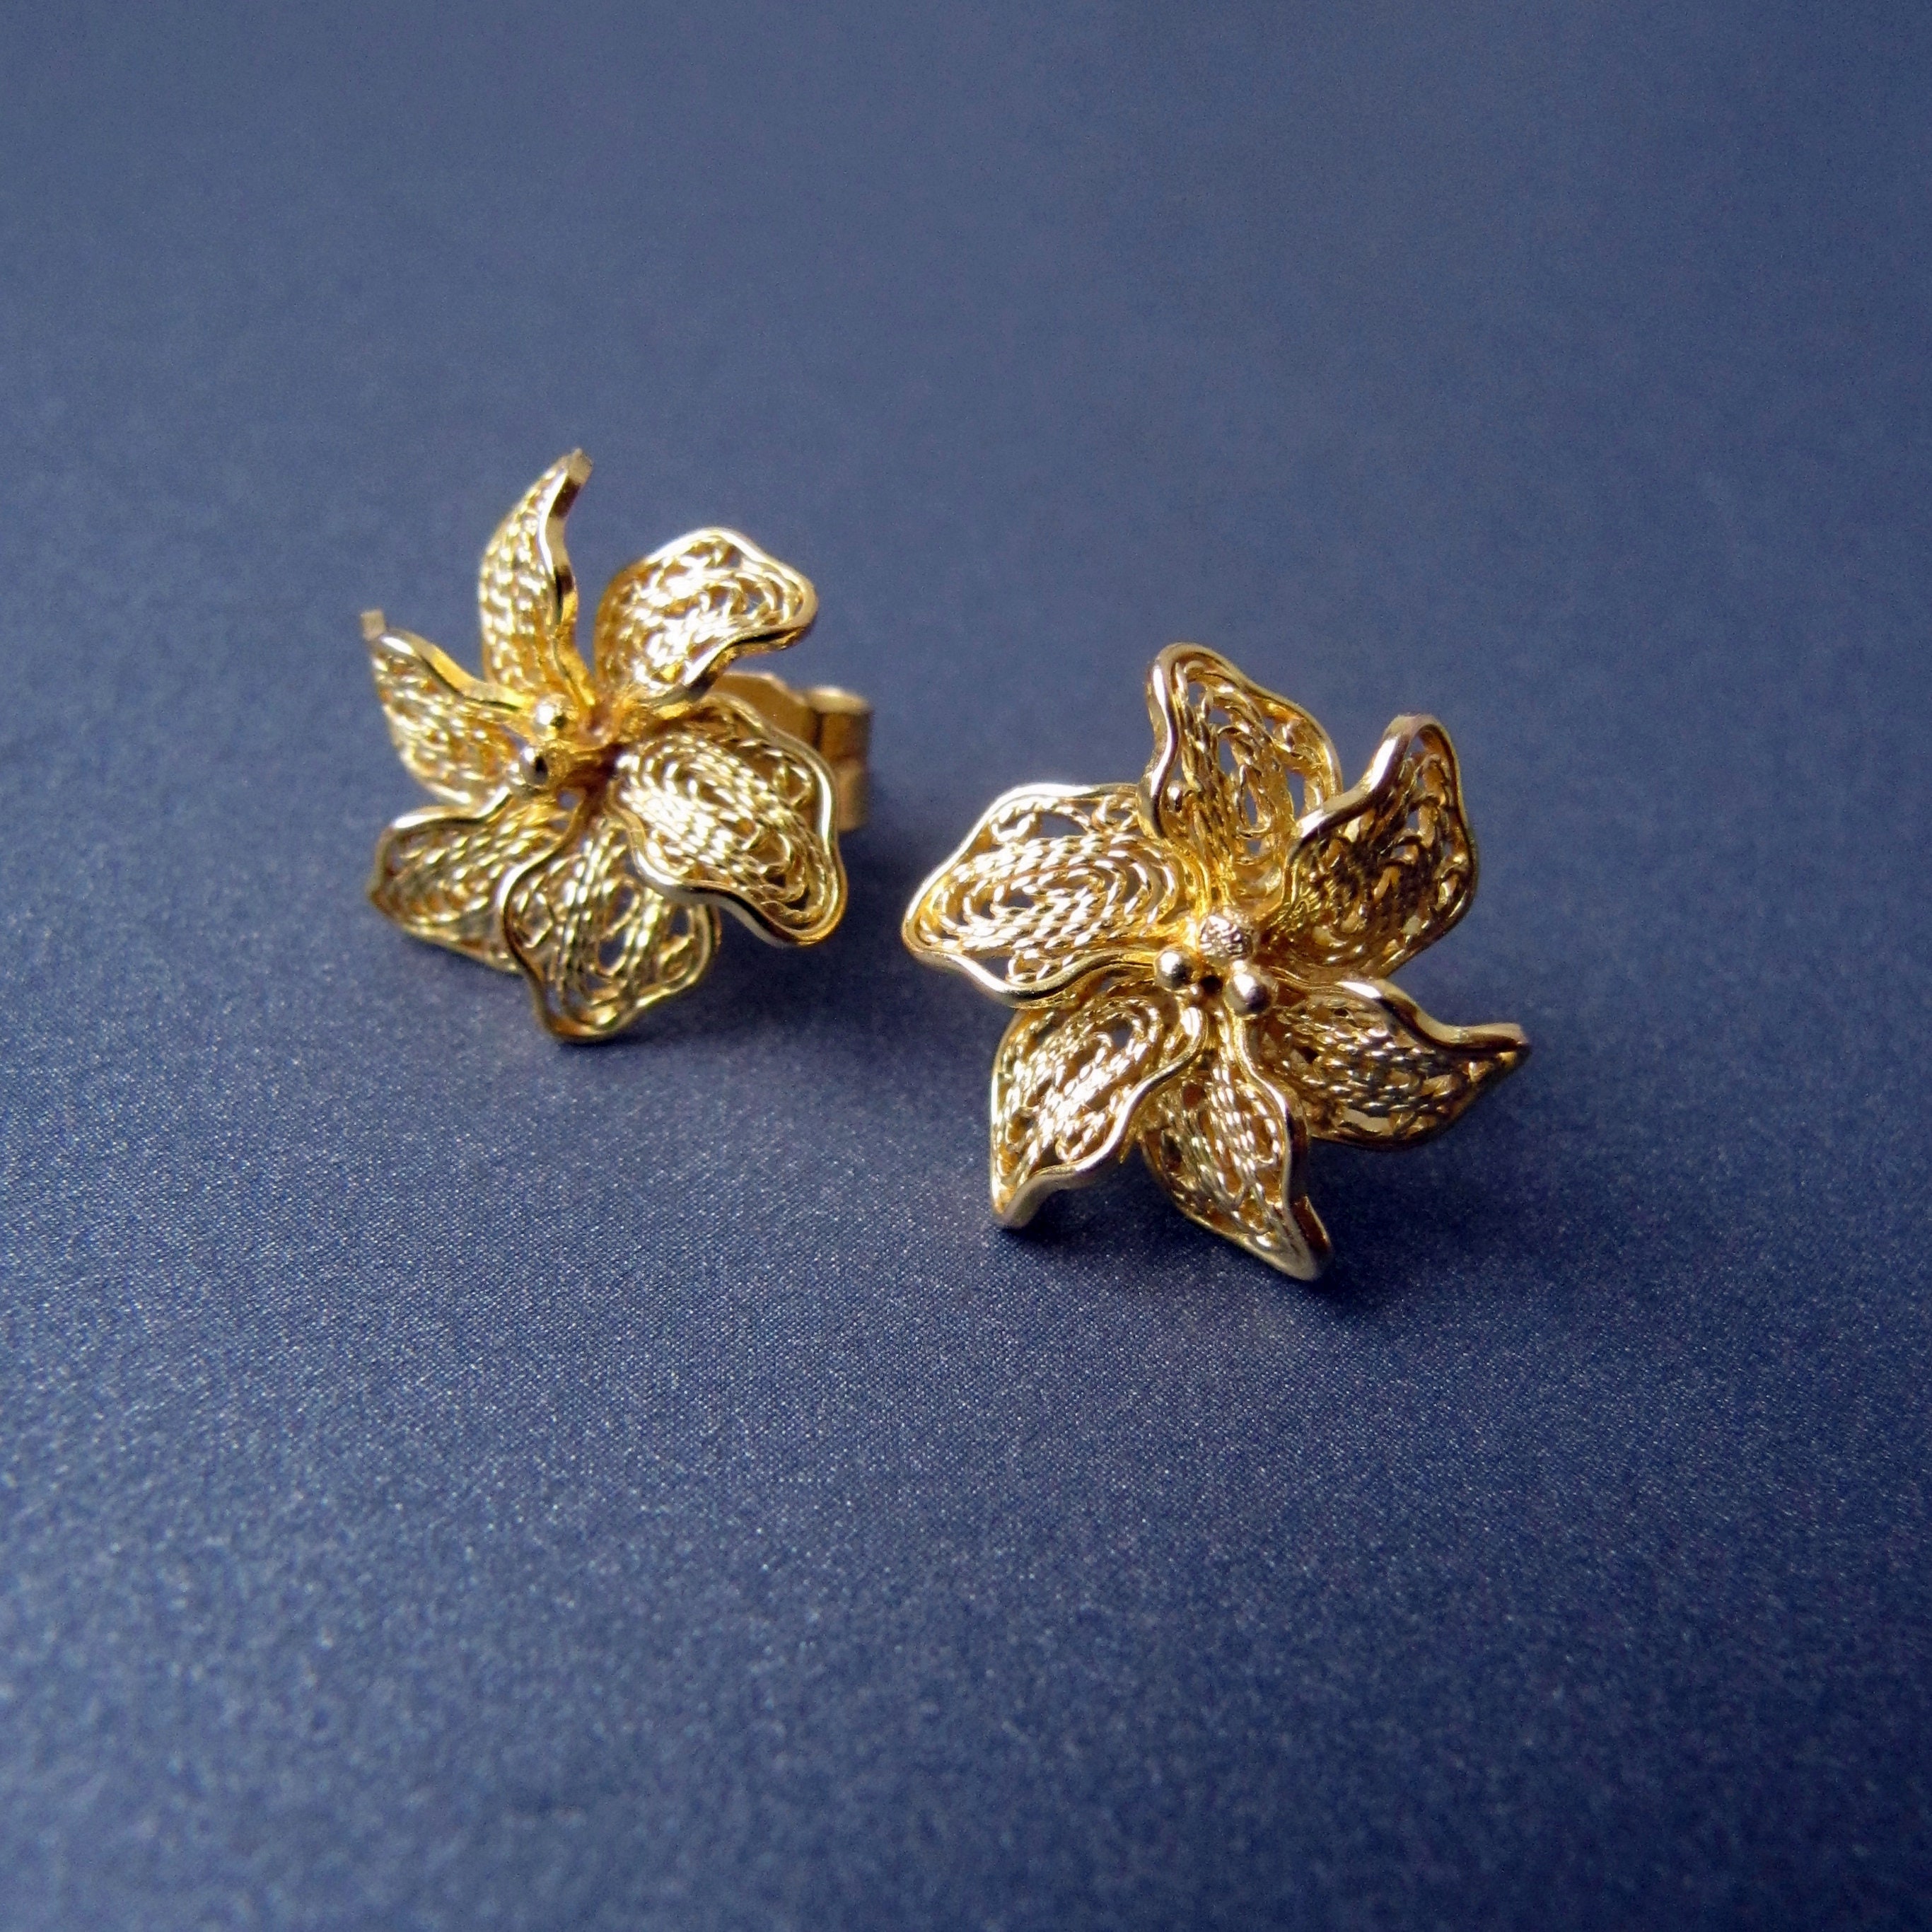 Yellow Gold Button Earrings 14K, 8mm, Women's & Men's, by Ben Bridge Jewelers